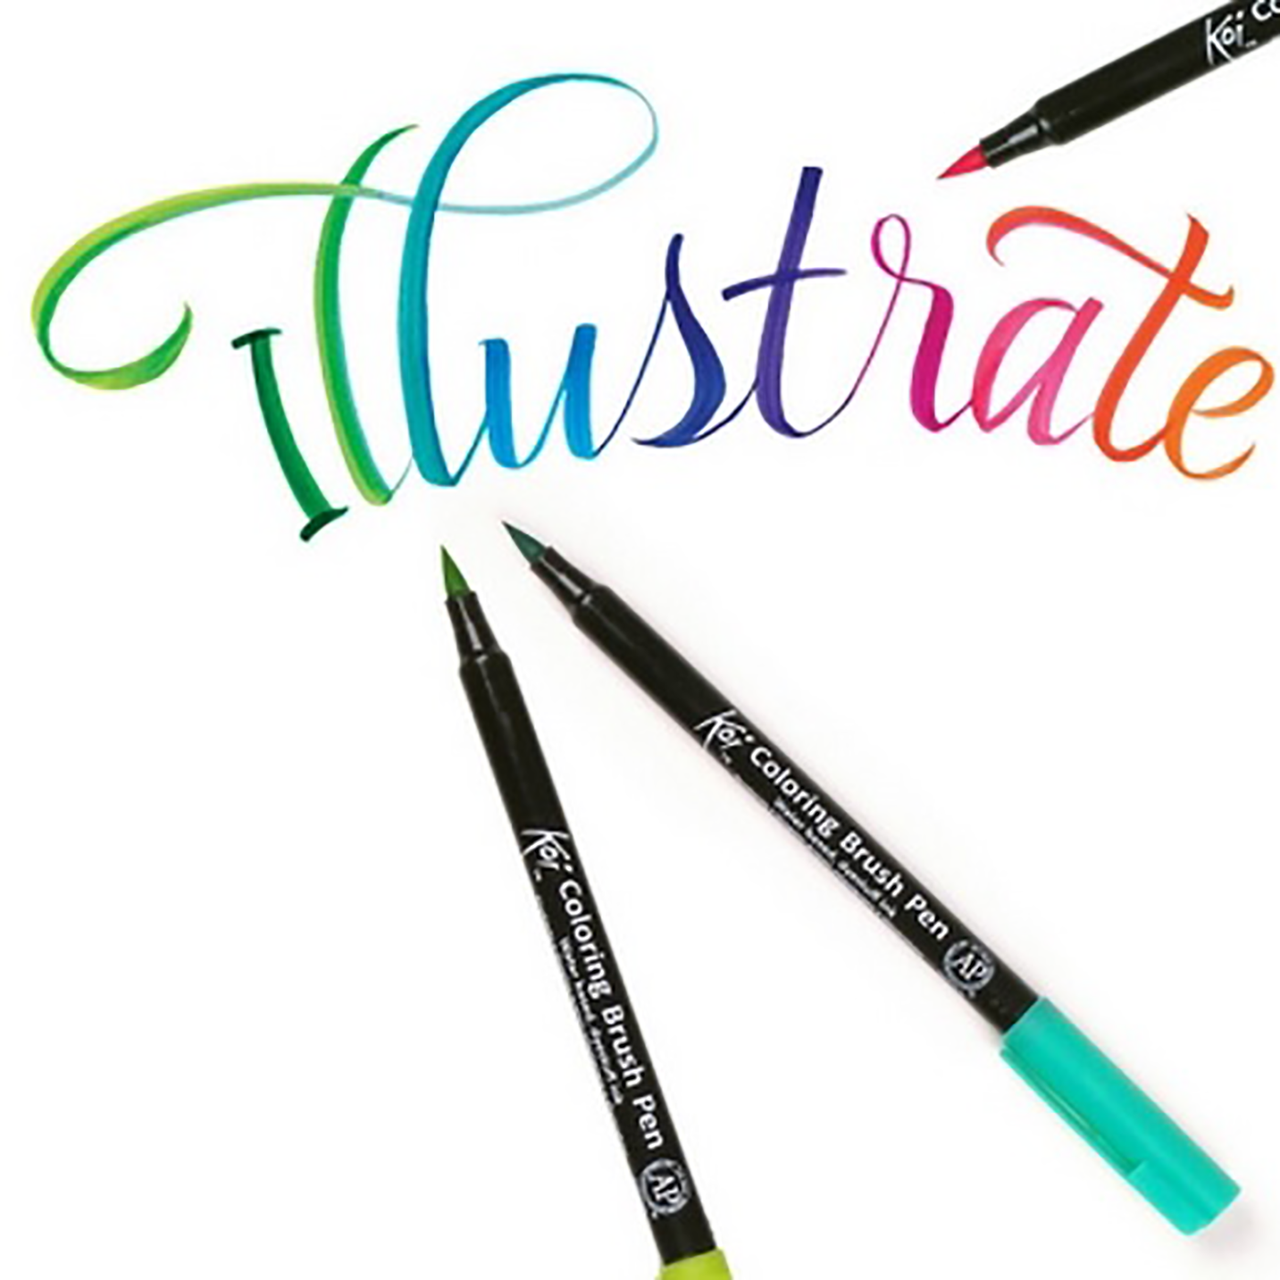 Coloring Brush Pens - John Neal Books